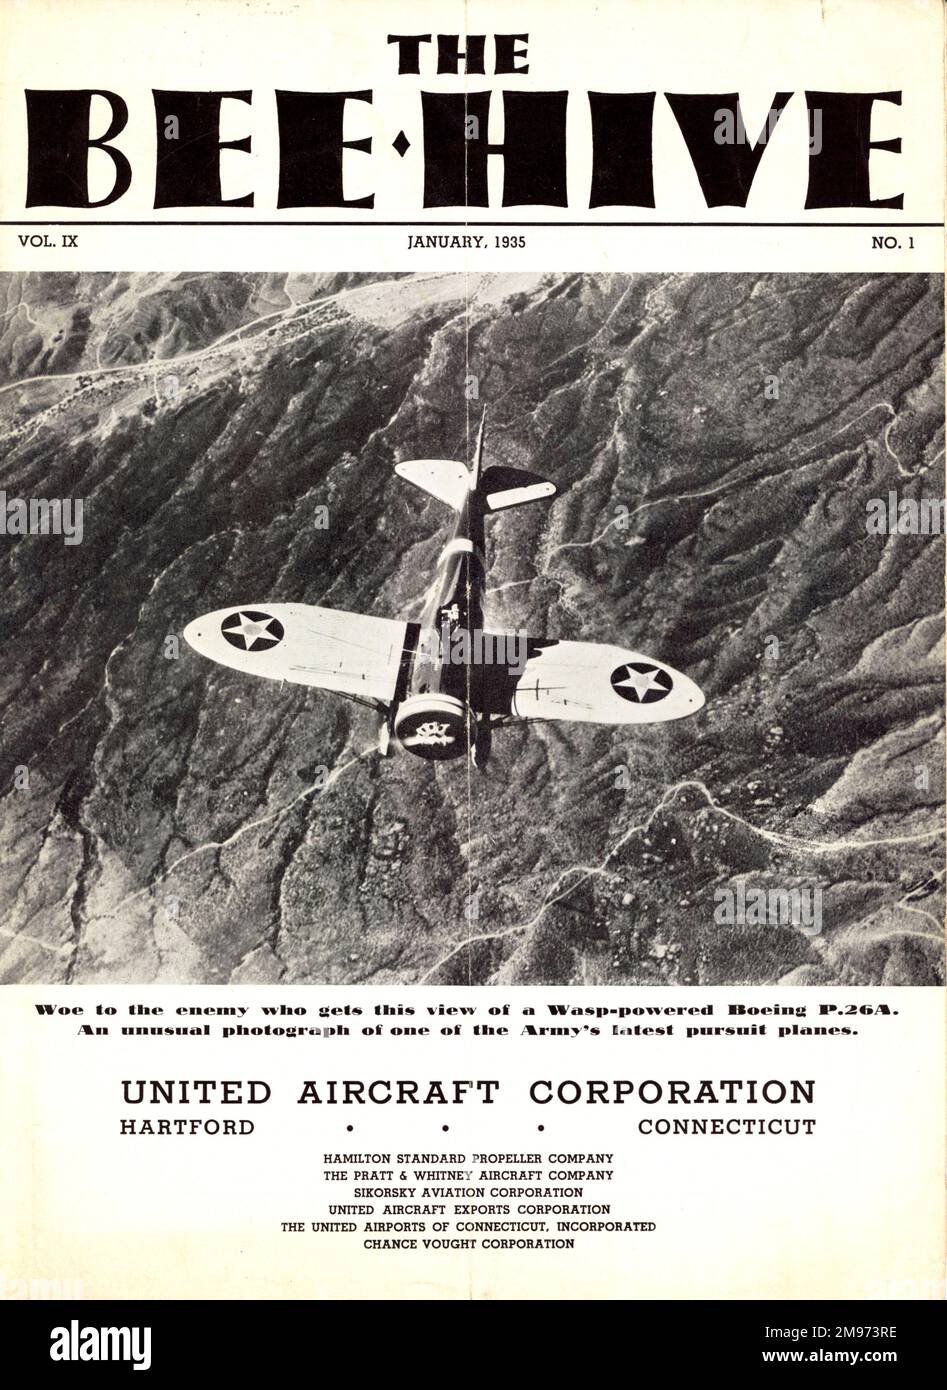 Die Titelseite des Bee Hive, Band IX, Nummer 1, Januar 1935, veröffentlicht von der United Aircraft Corporation für die Mitarbeiter ihrer Tochtergesellschaften. Stockfoto